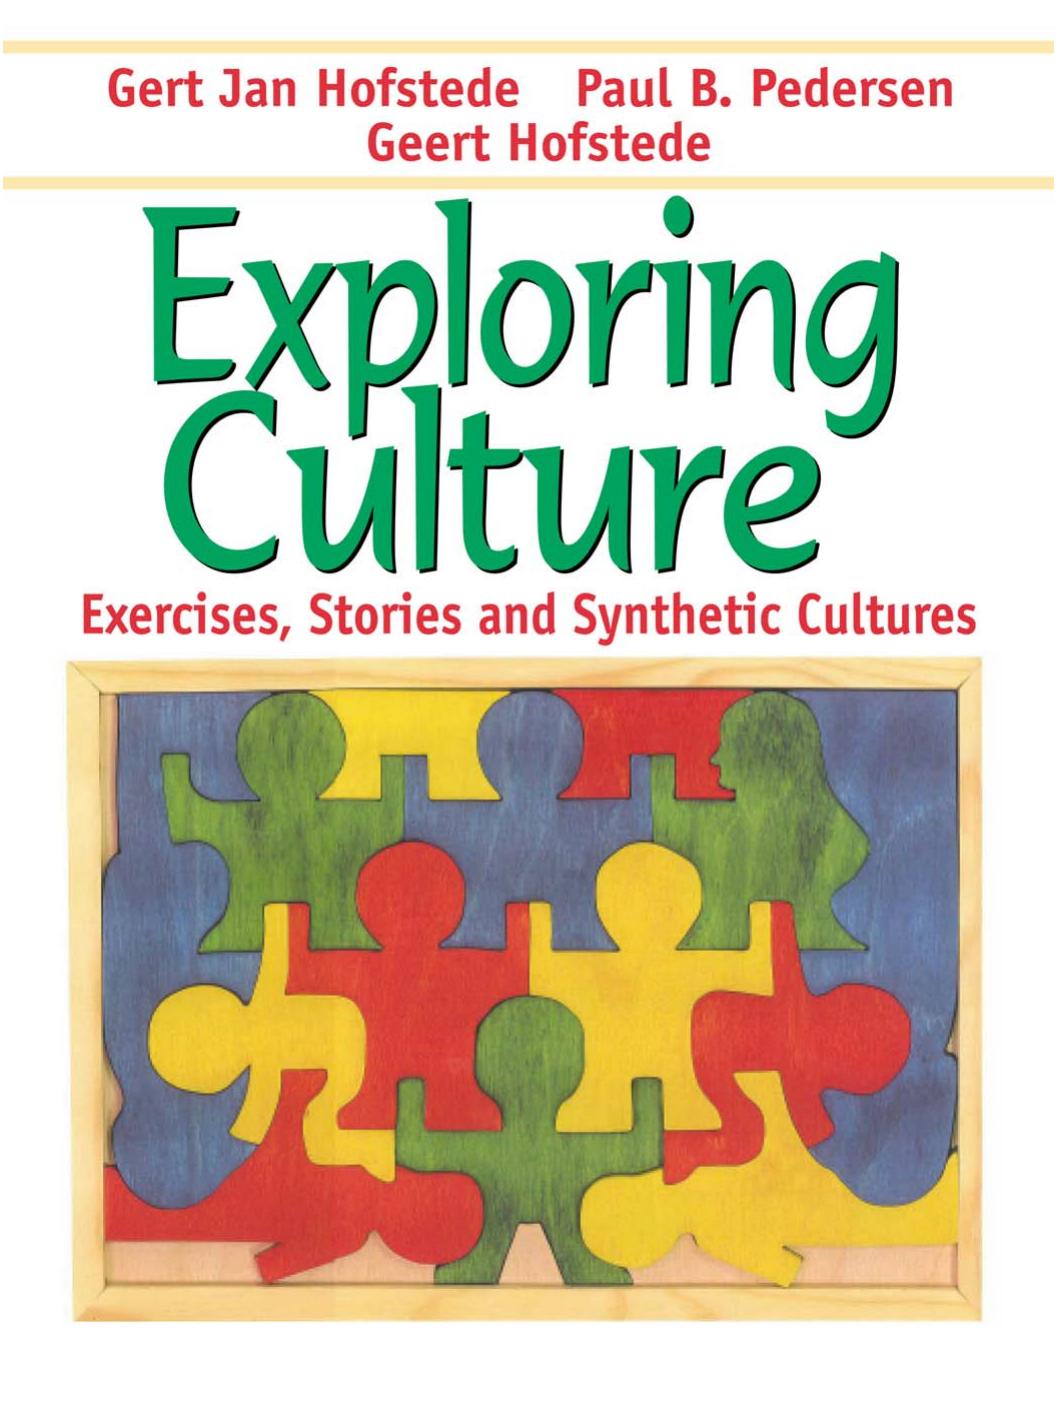 (eBook PDF)Exploring Culture: Exercises, Stories and Synthetic Cultures by Gert Jan Hofstede,Paul B. Pedersen,Geert Hofstede